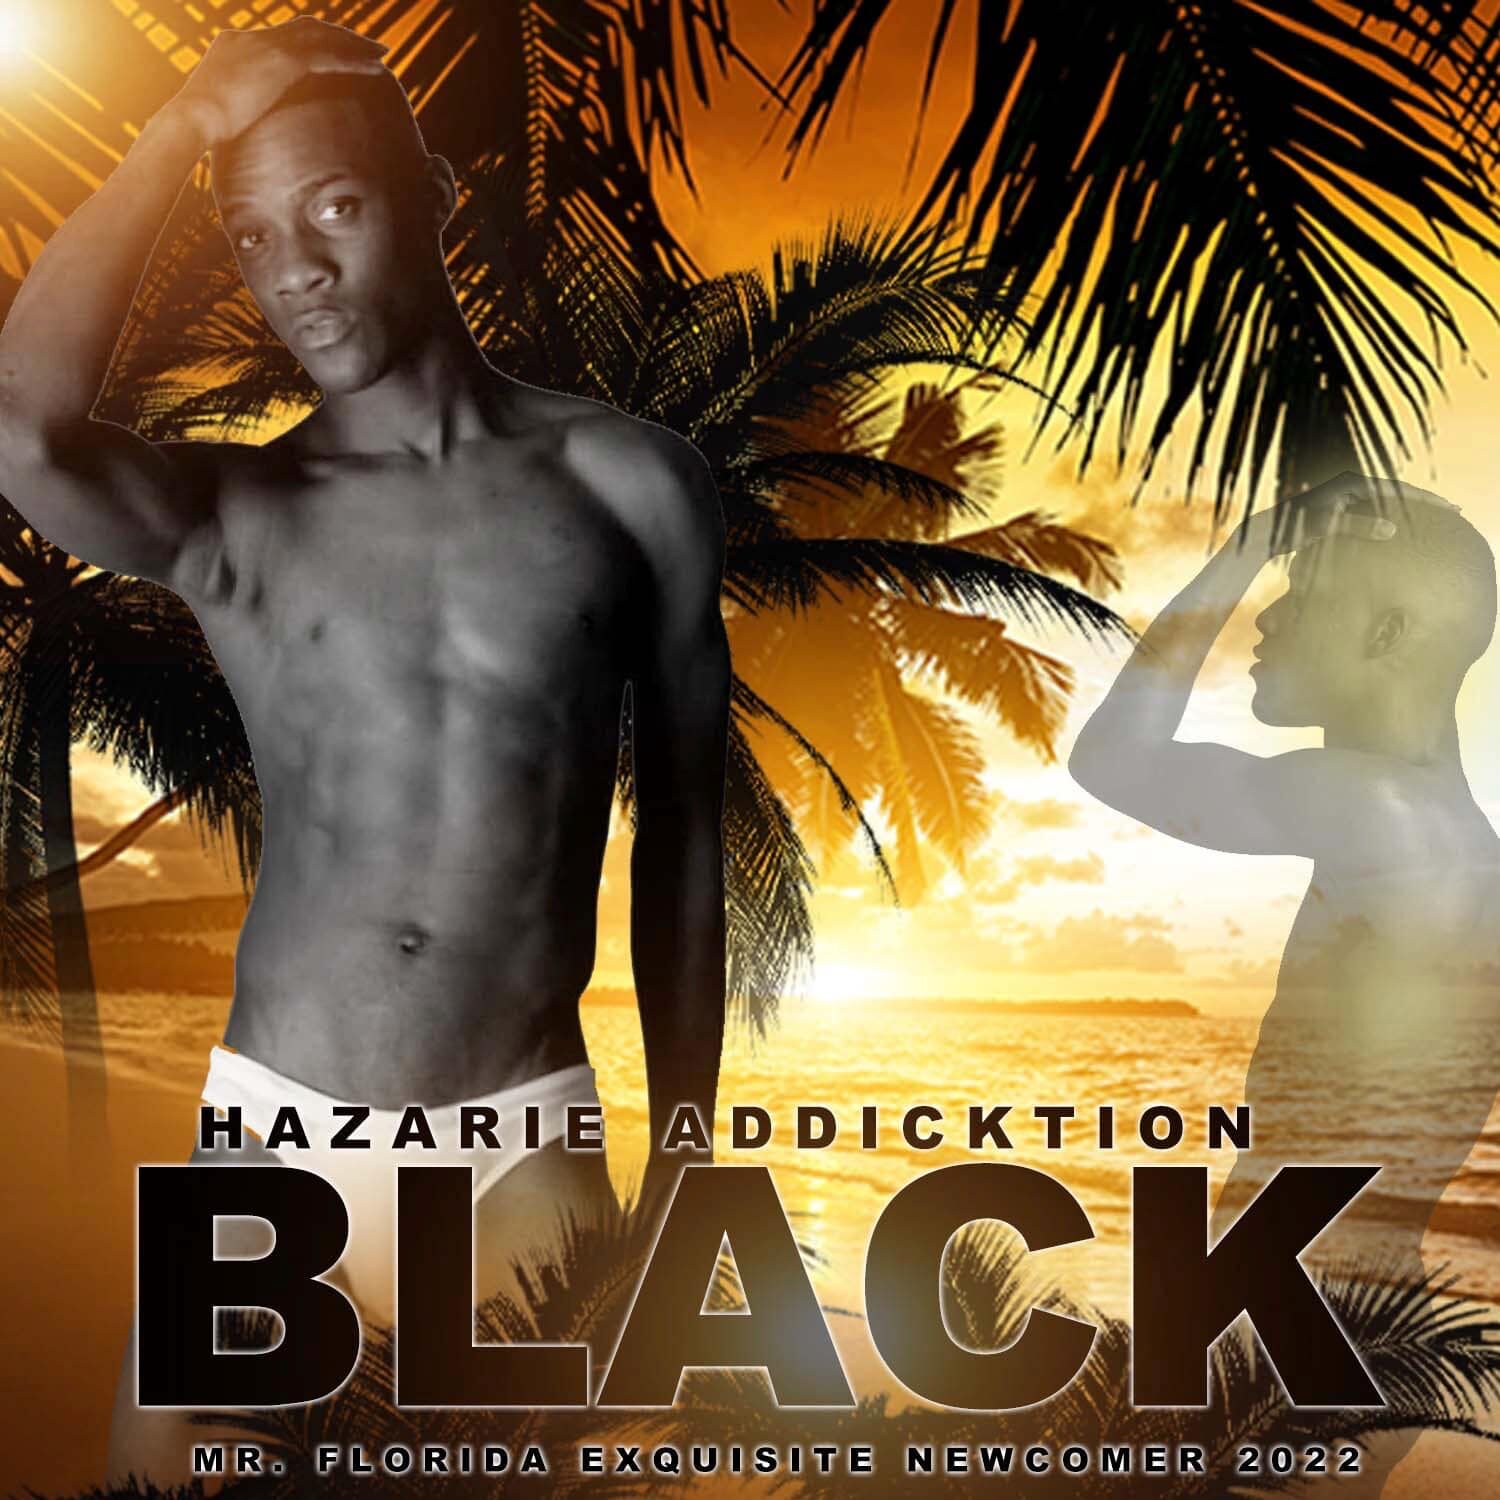 Hazarie Addicktion Black